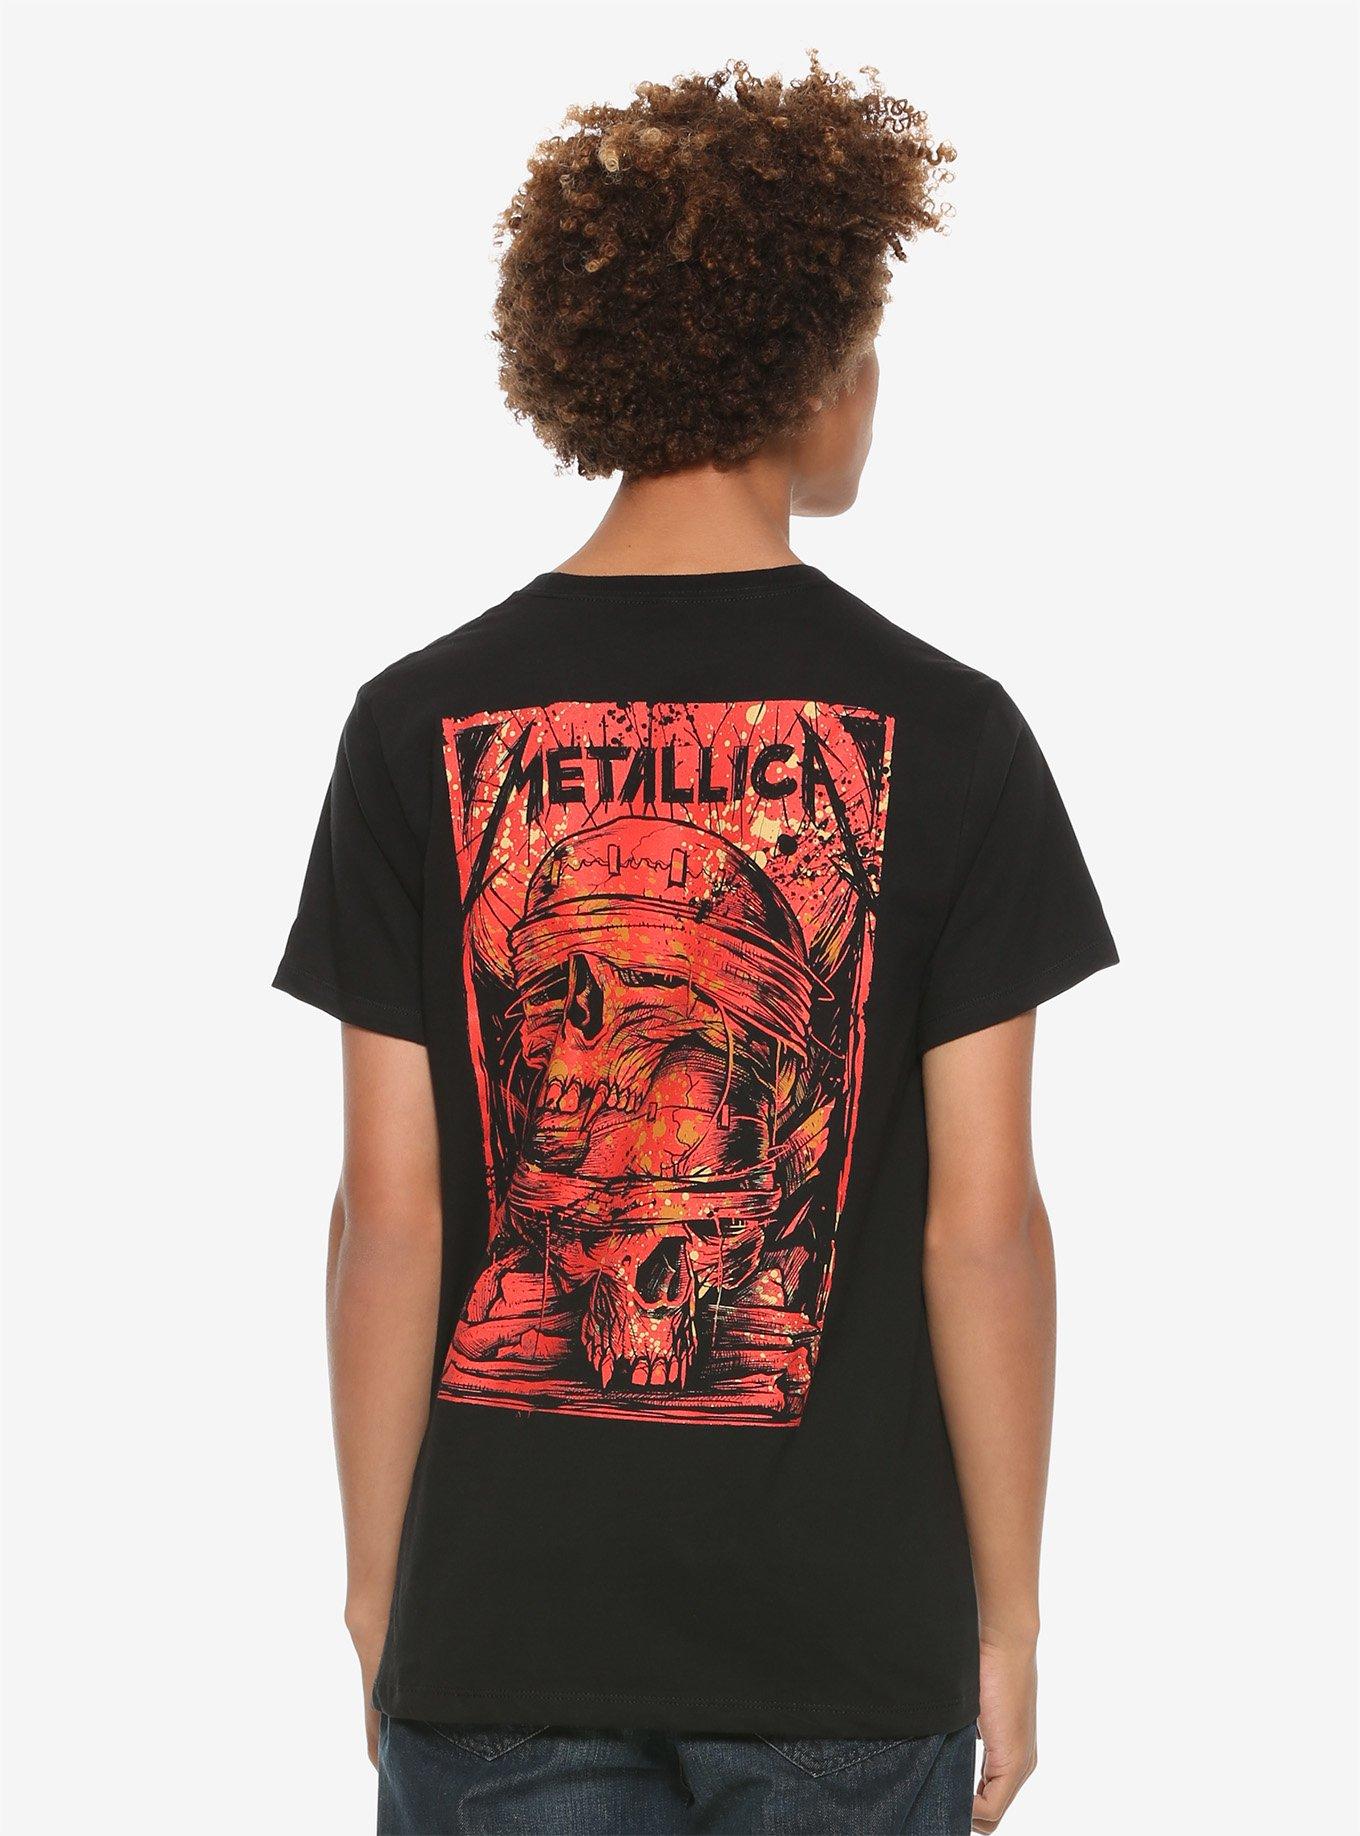 Metallica Blind Skull T-Shirt, BLACK, alternate